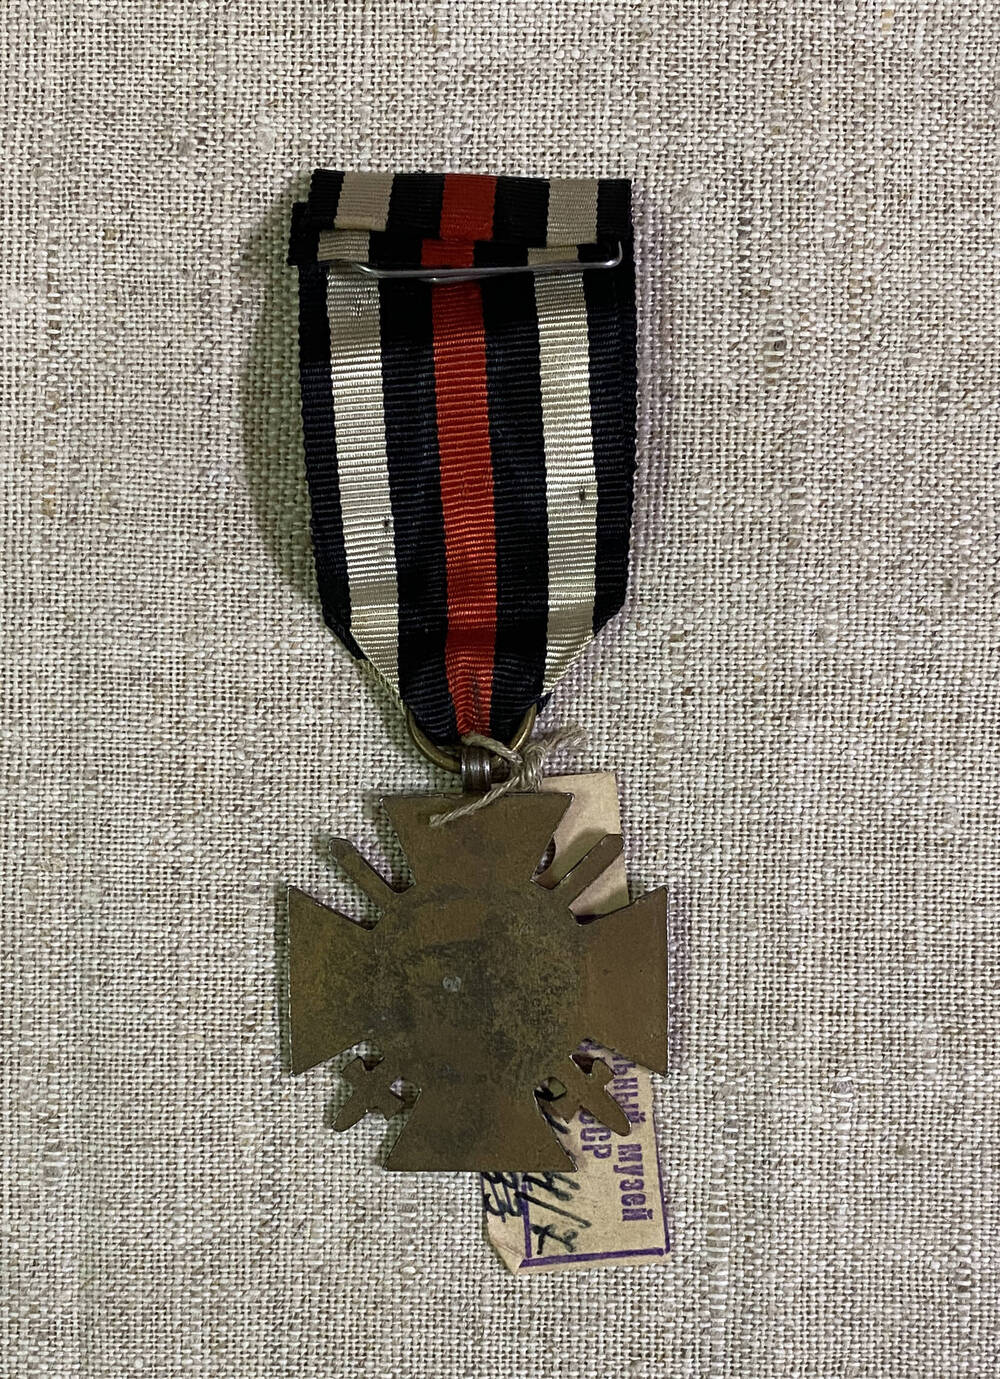 Орден Австро-Венгерской империи в форме креста, цифры 1914 1918 в обрамлении лаврового венка и двух перекрещивающихся шпаг. На муаровой ленте